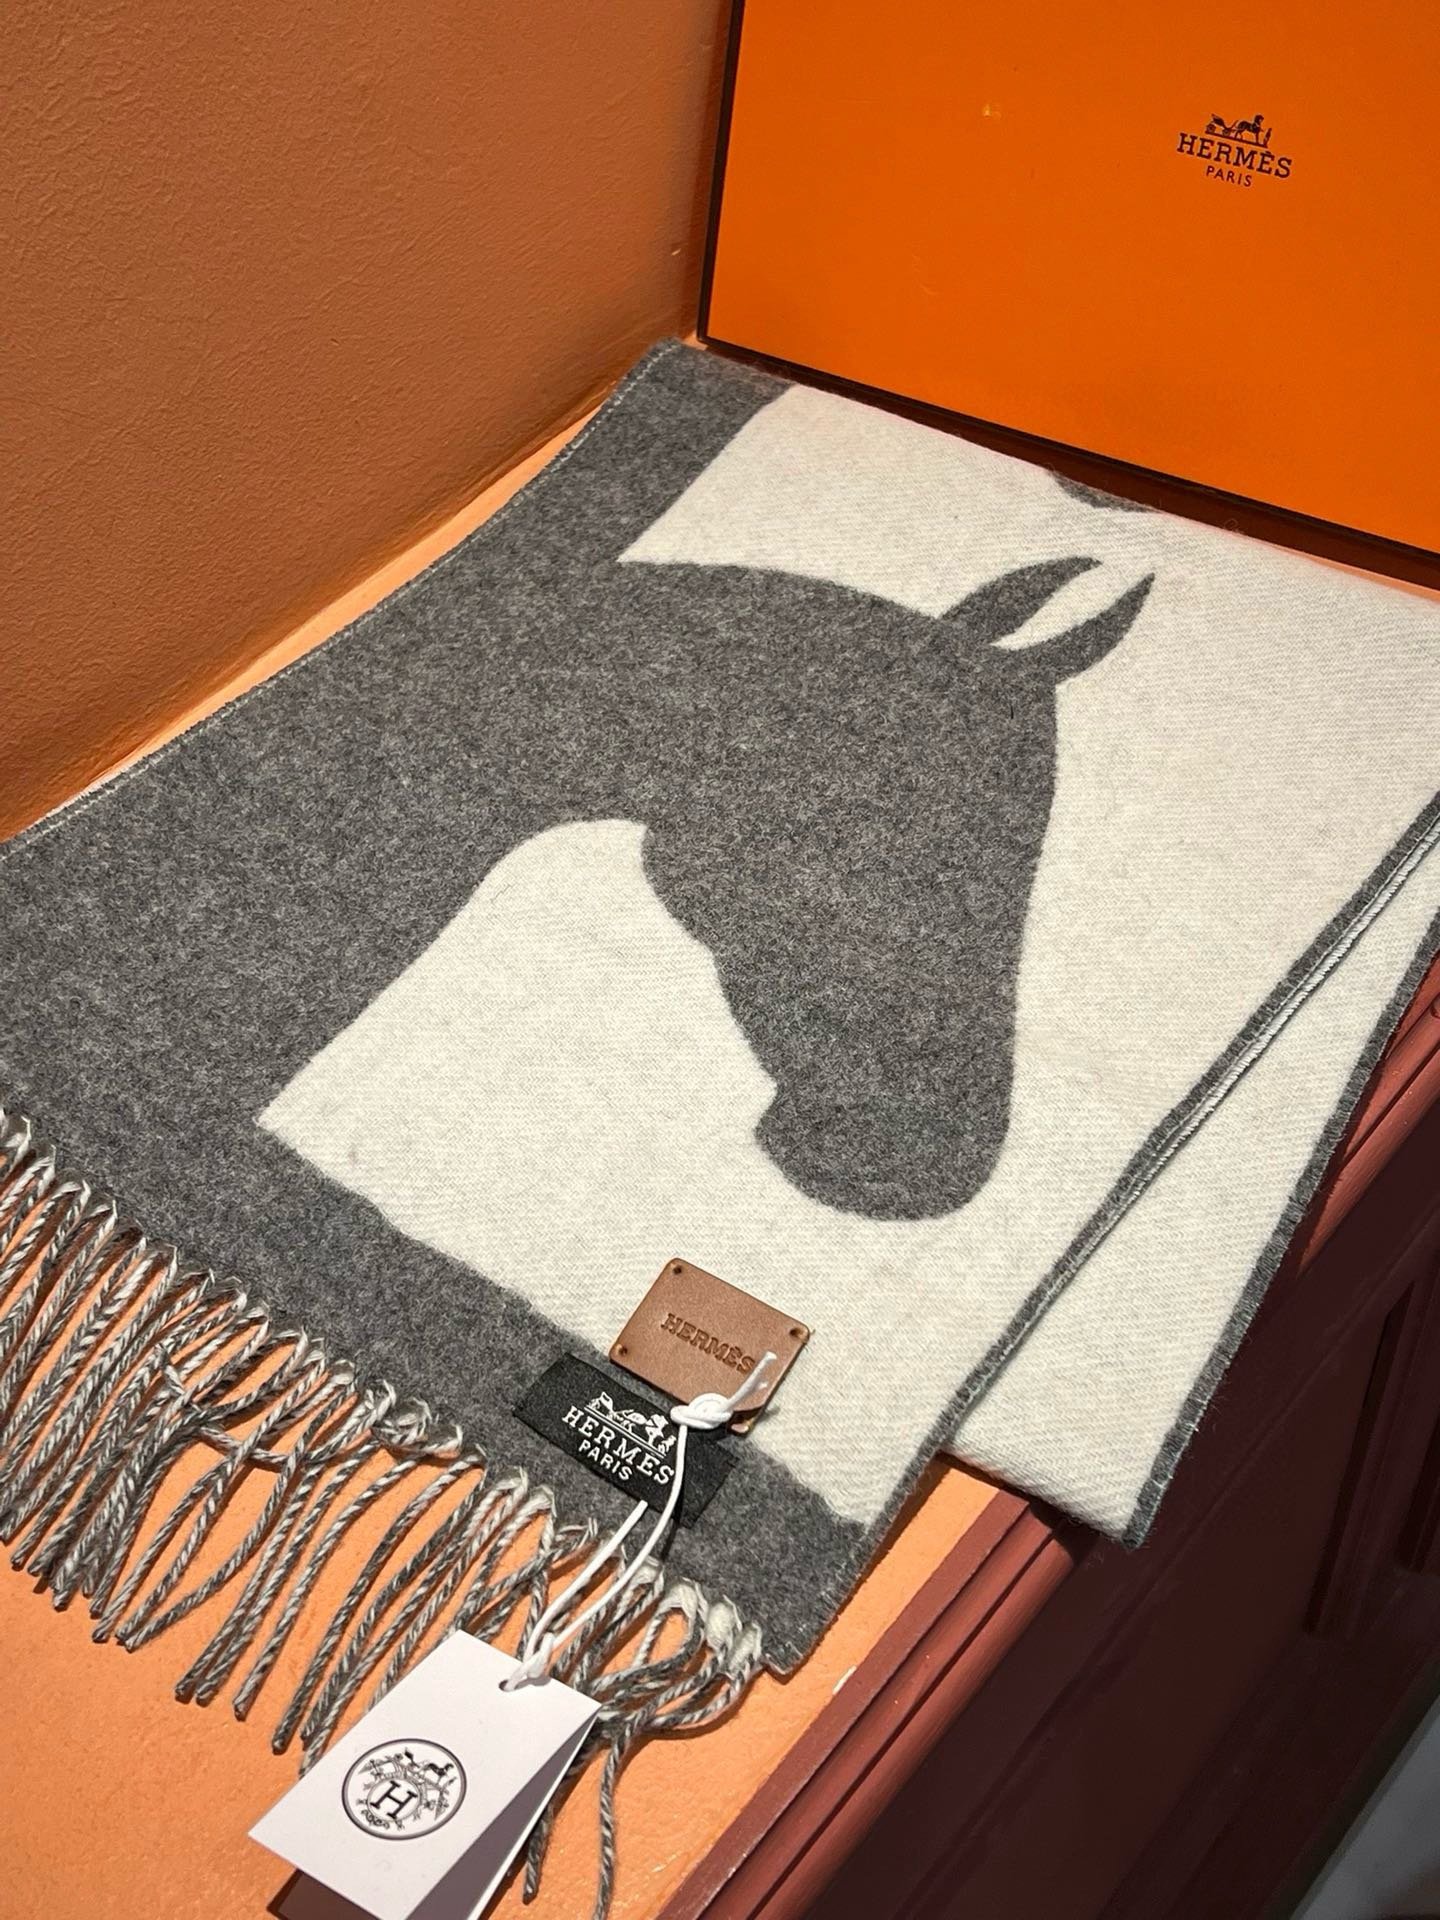 爱马仕新款这款围巾采用细腻的撞色提花编织呈现杰夫麦克菲里奇GeoffMcFetridge设计的Entre